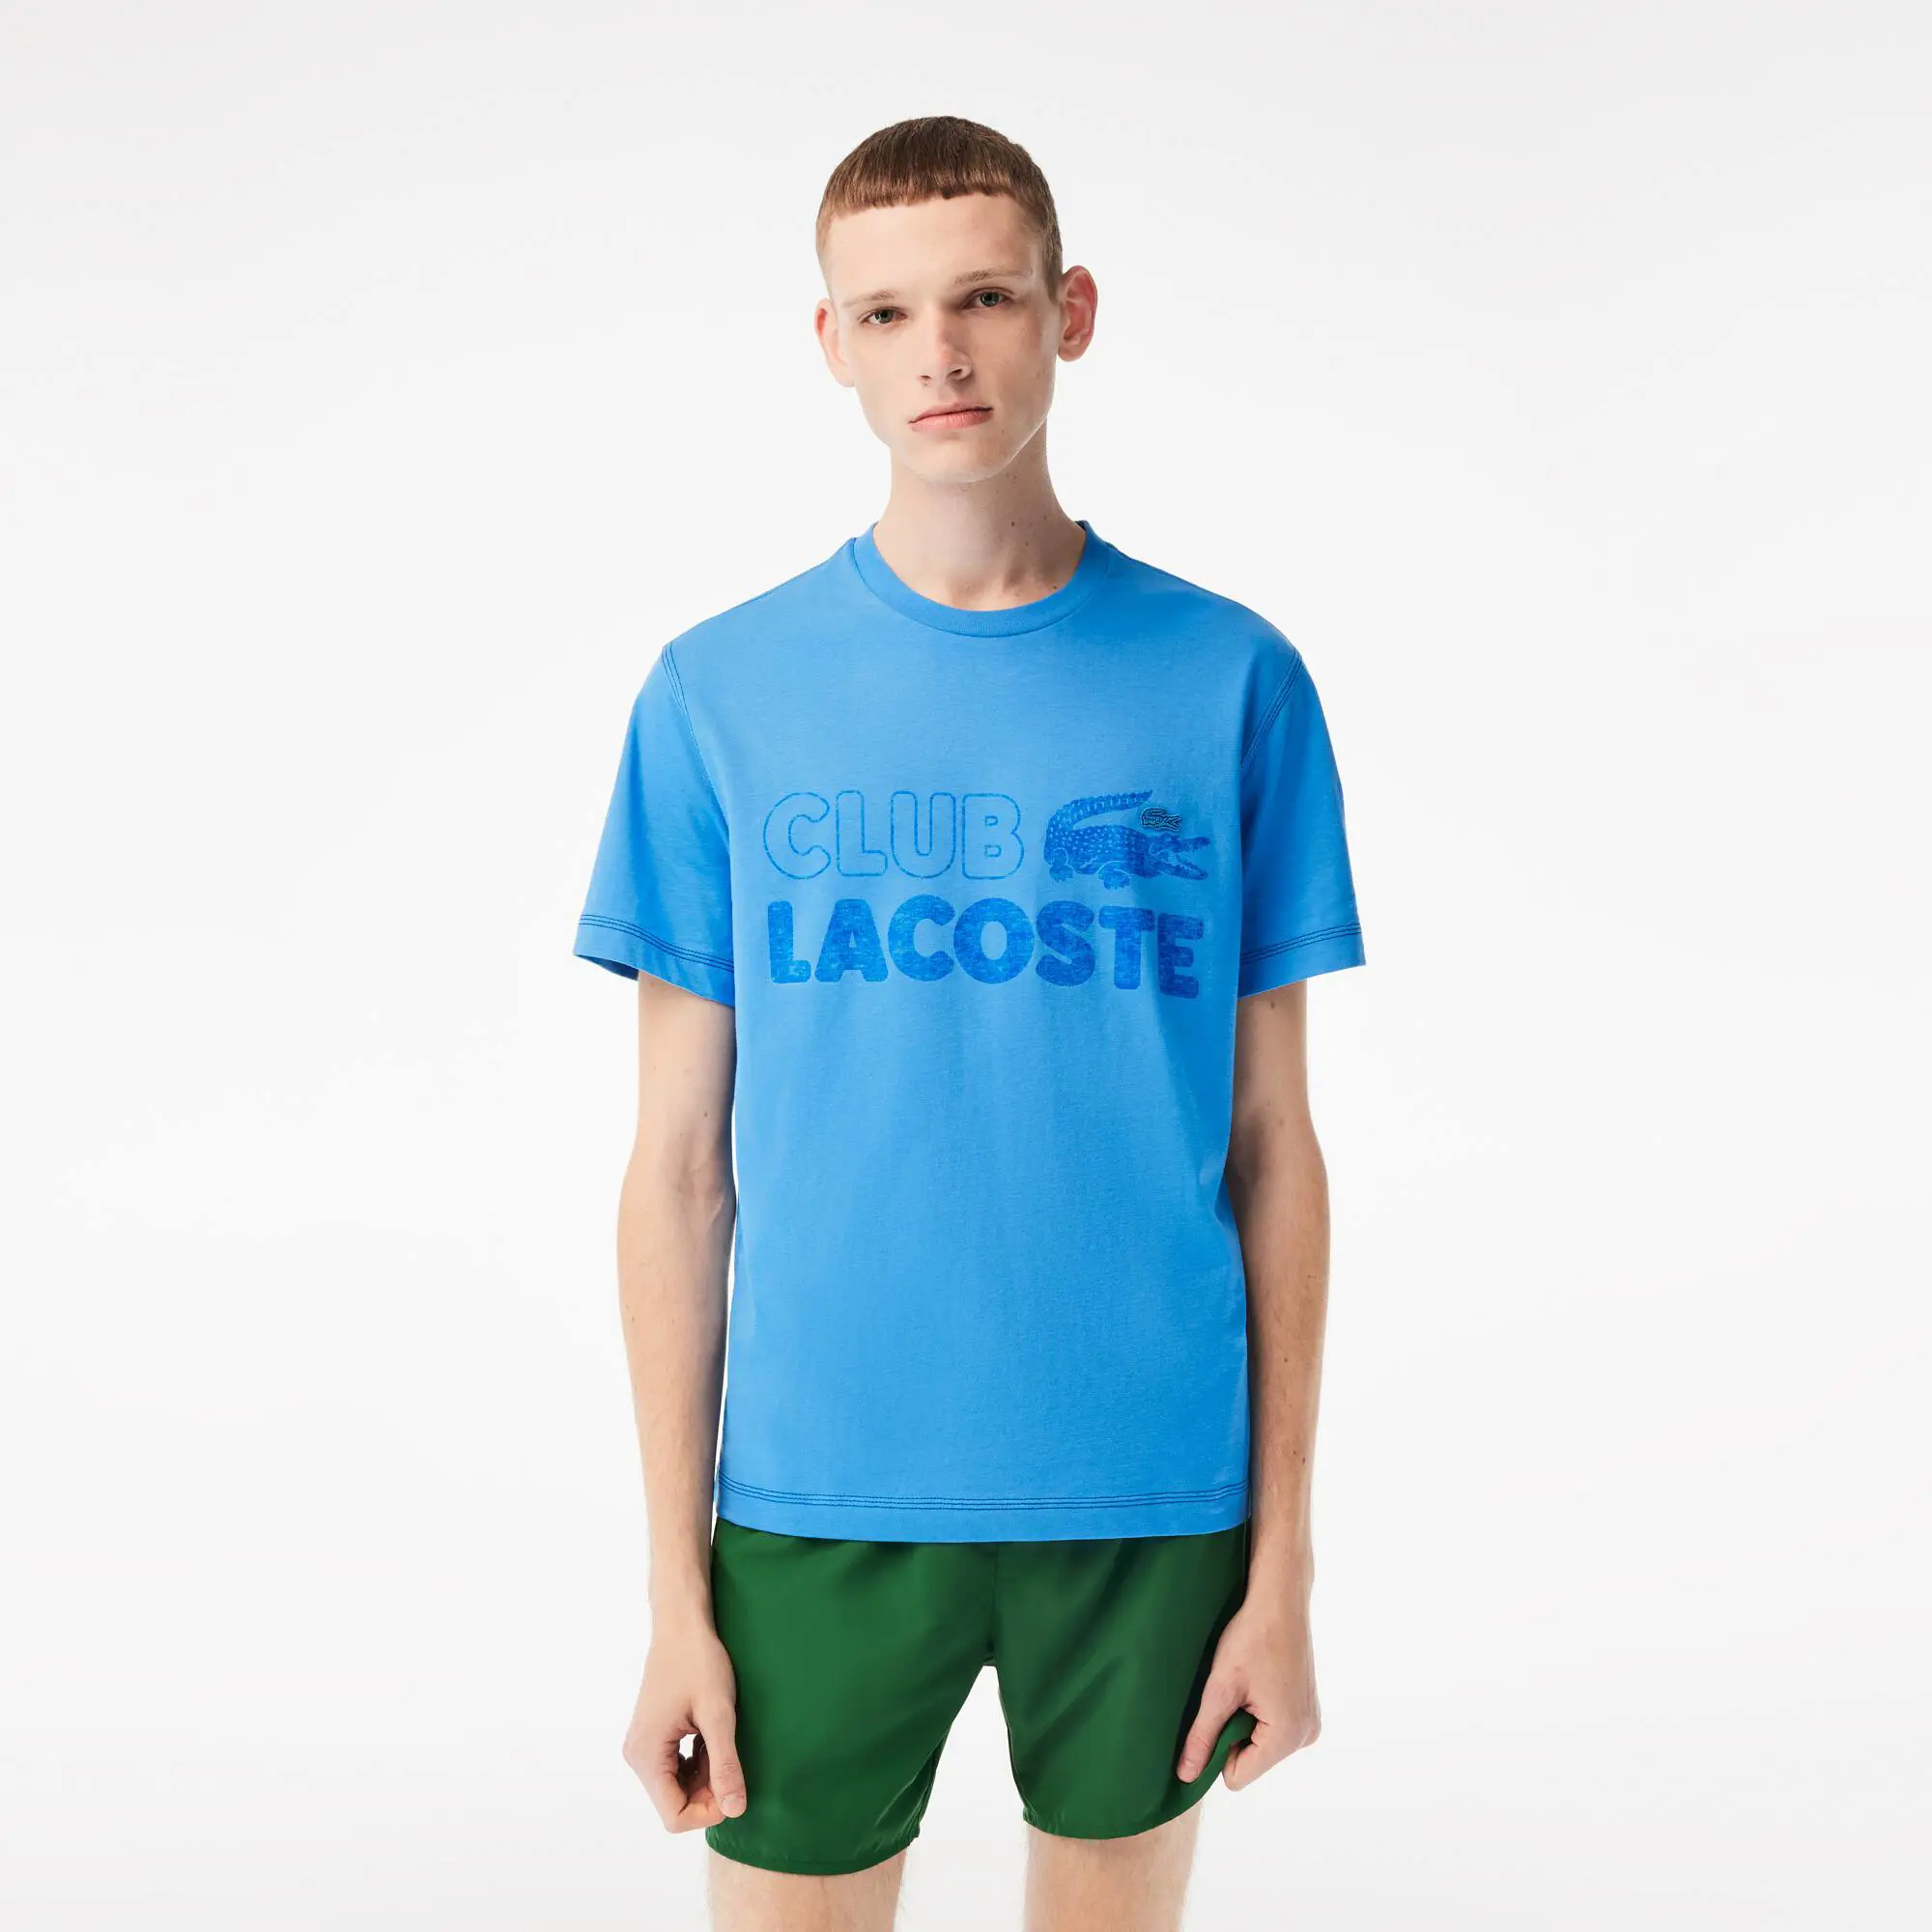 Lacoste Men’s Lacoste Vintage Print Organic Cotton T-shirt. 1